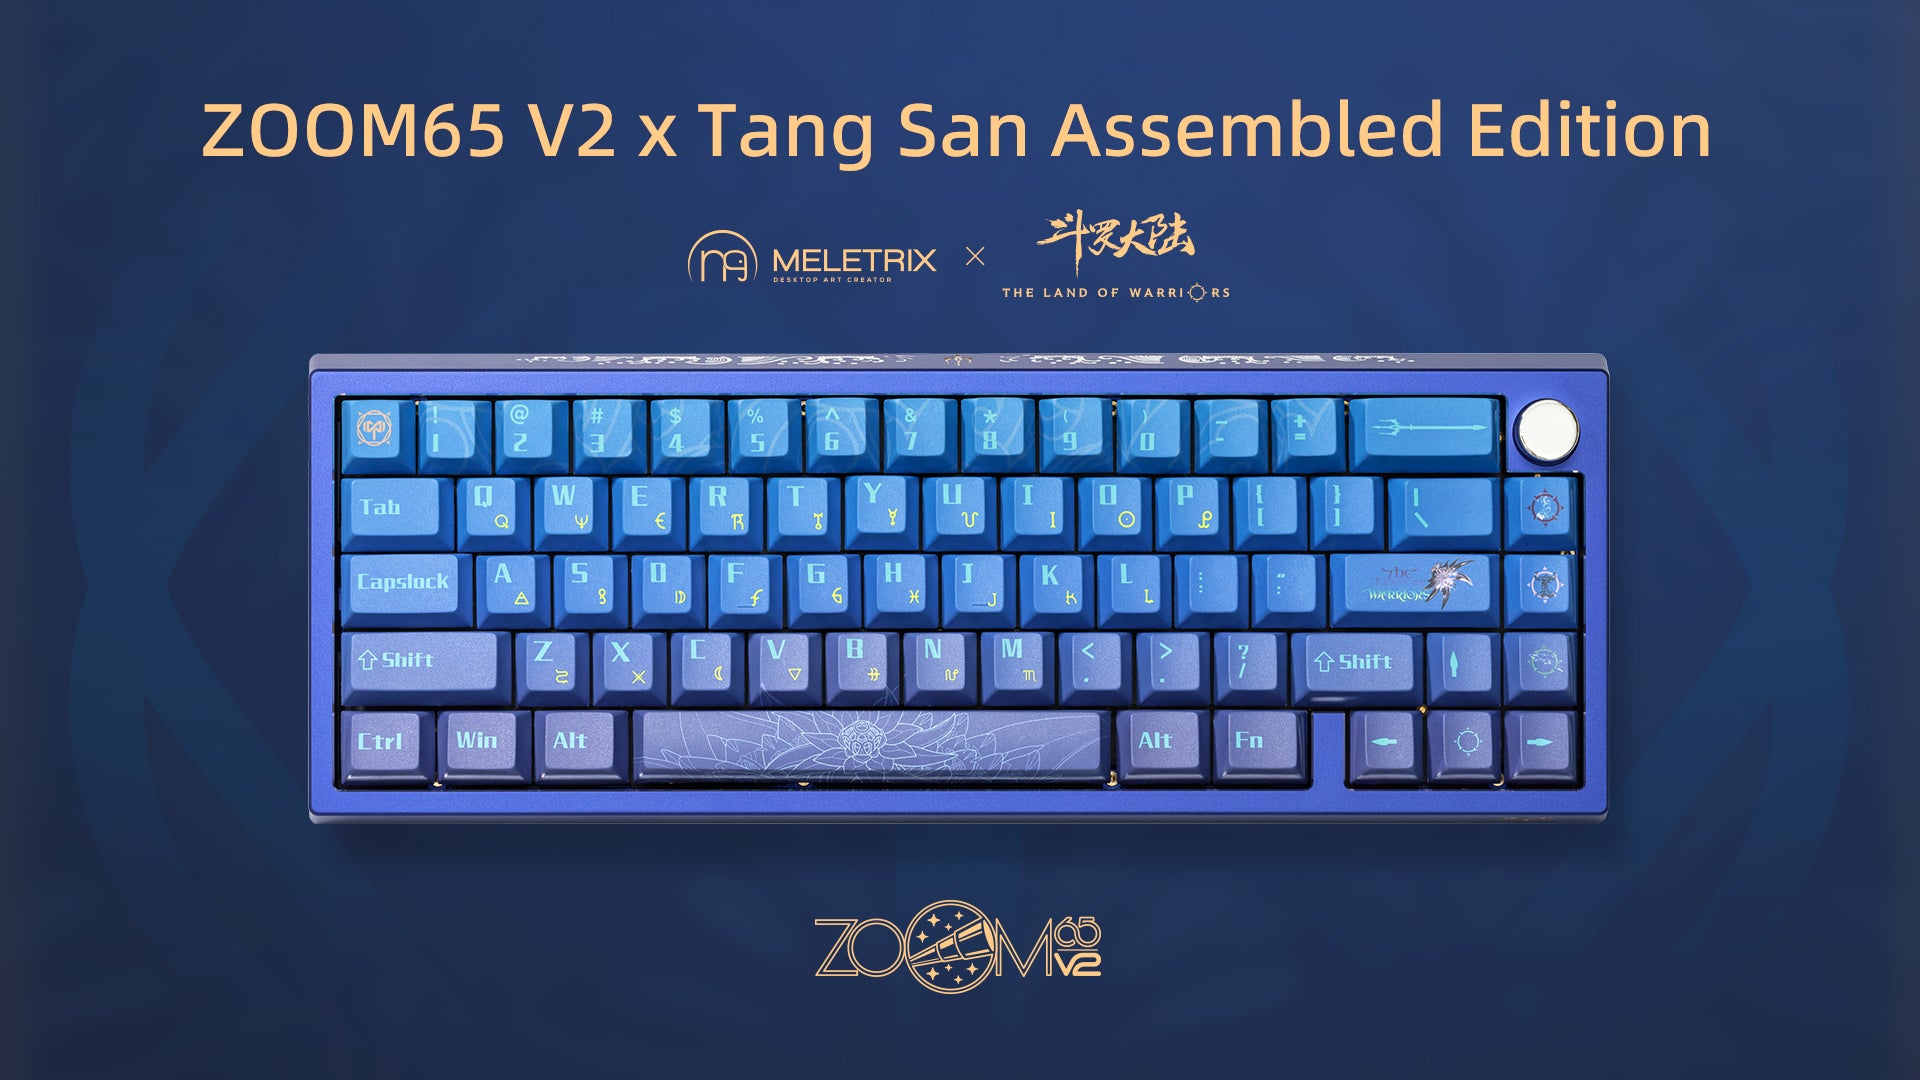 ZOOM65 V2 x Tang San Assembled Edition Keyboard Kit